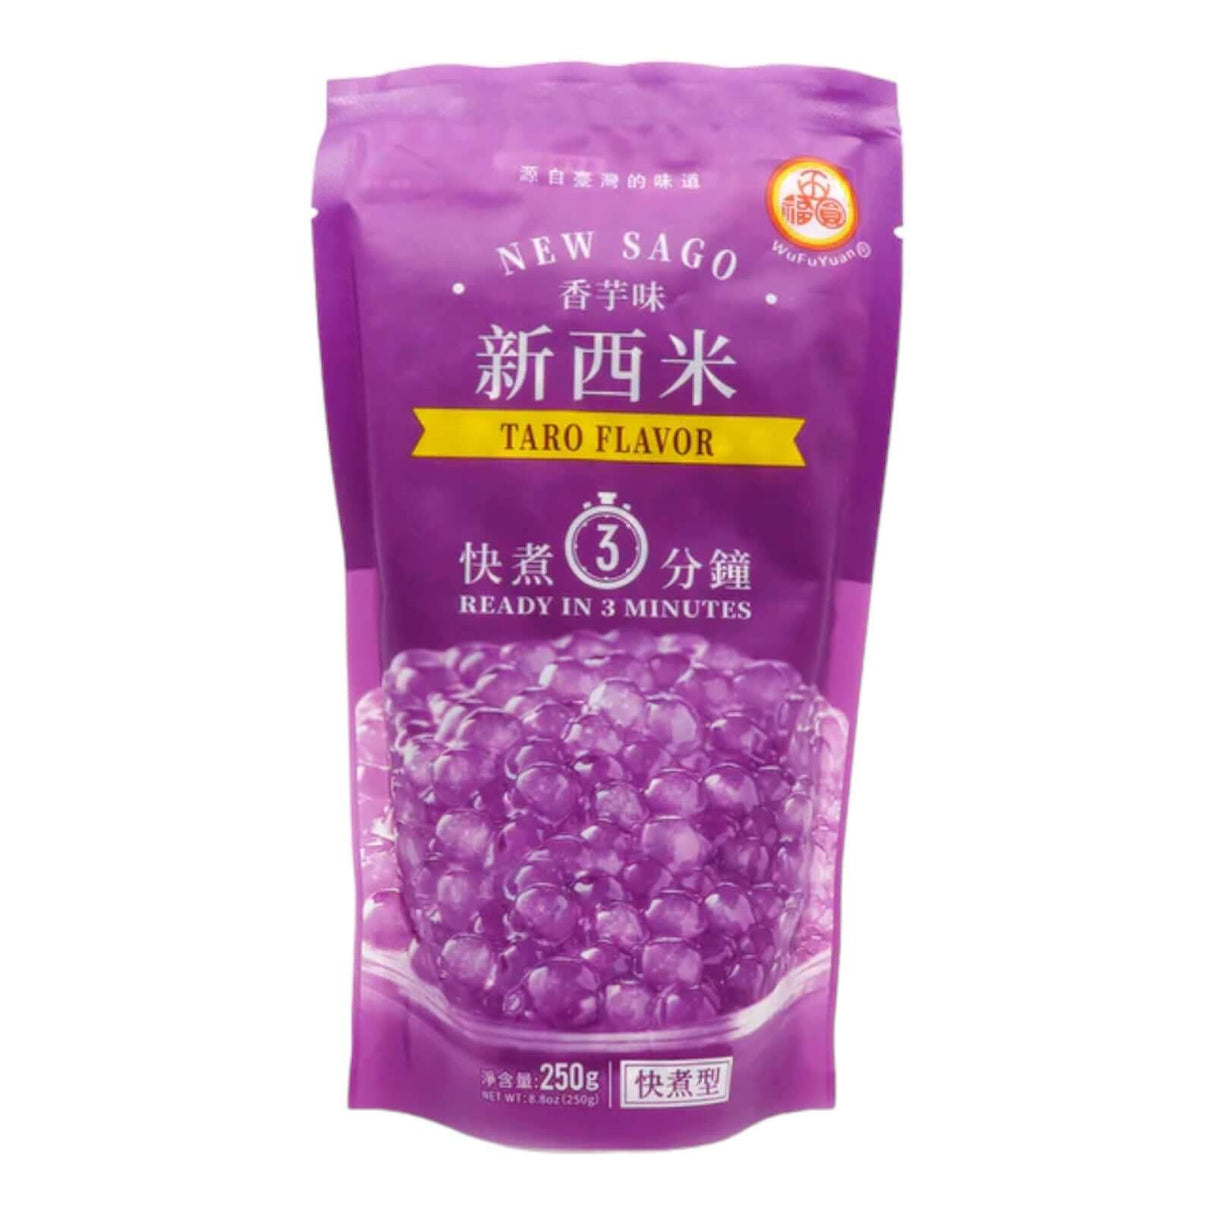 WuFuYuan Tapioca Pearl Taro Flavor